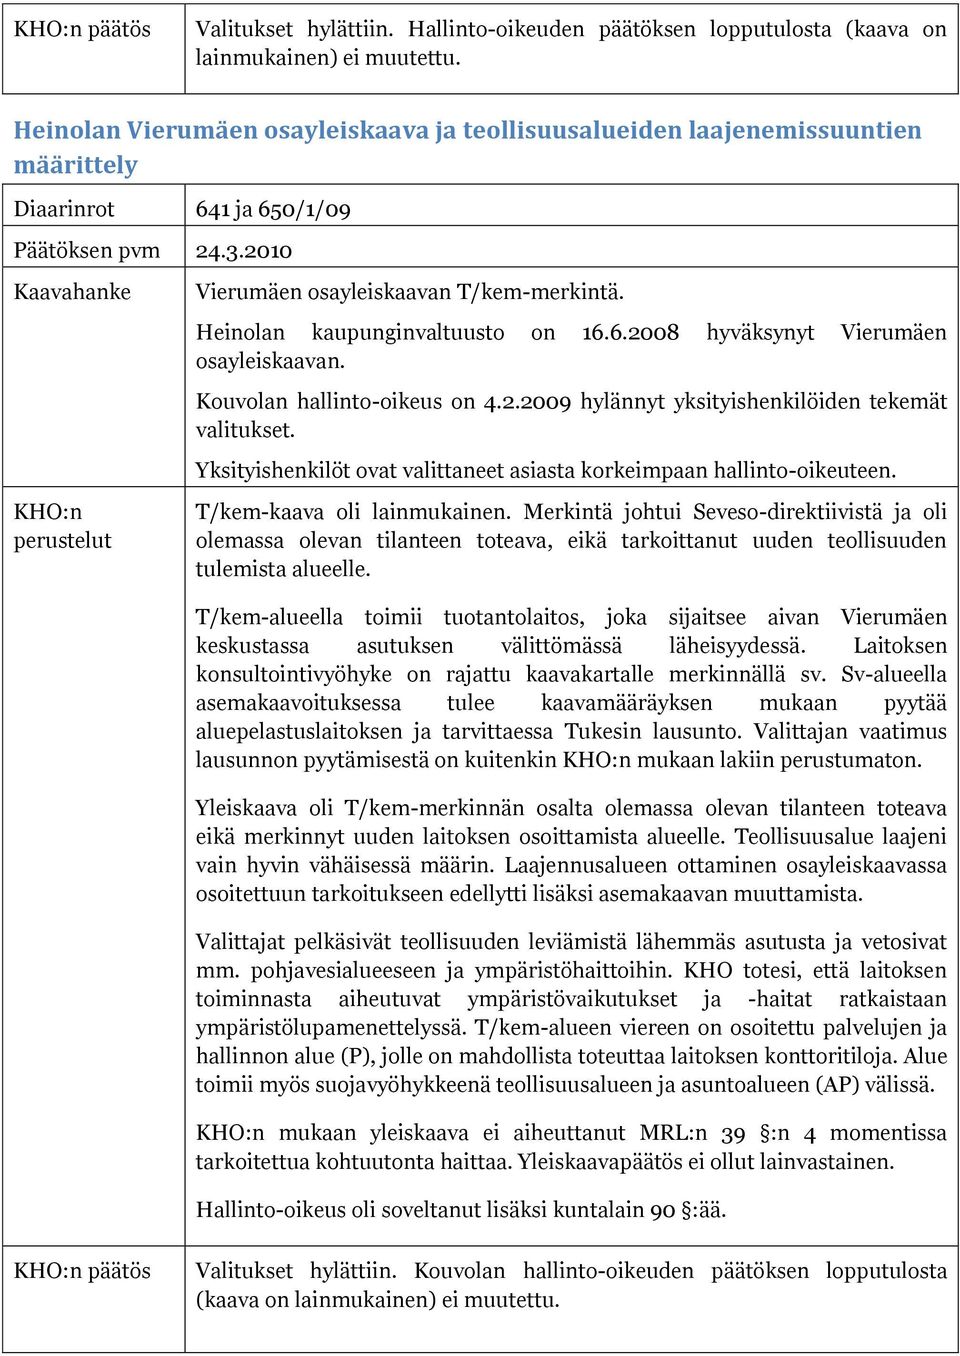 Heinolan kaupunginvaltuusto on 16.6.2008 hyväksynyt Vierumäen osayleiskaavan. Kouvolan hallinto-oikeus on 4.2.2009 hylännyt yksityishenkilöiden tekemät valitukset.